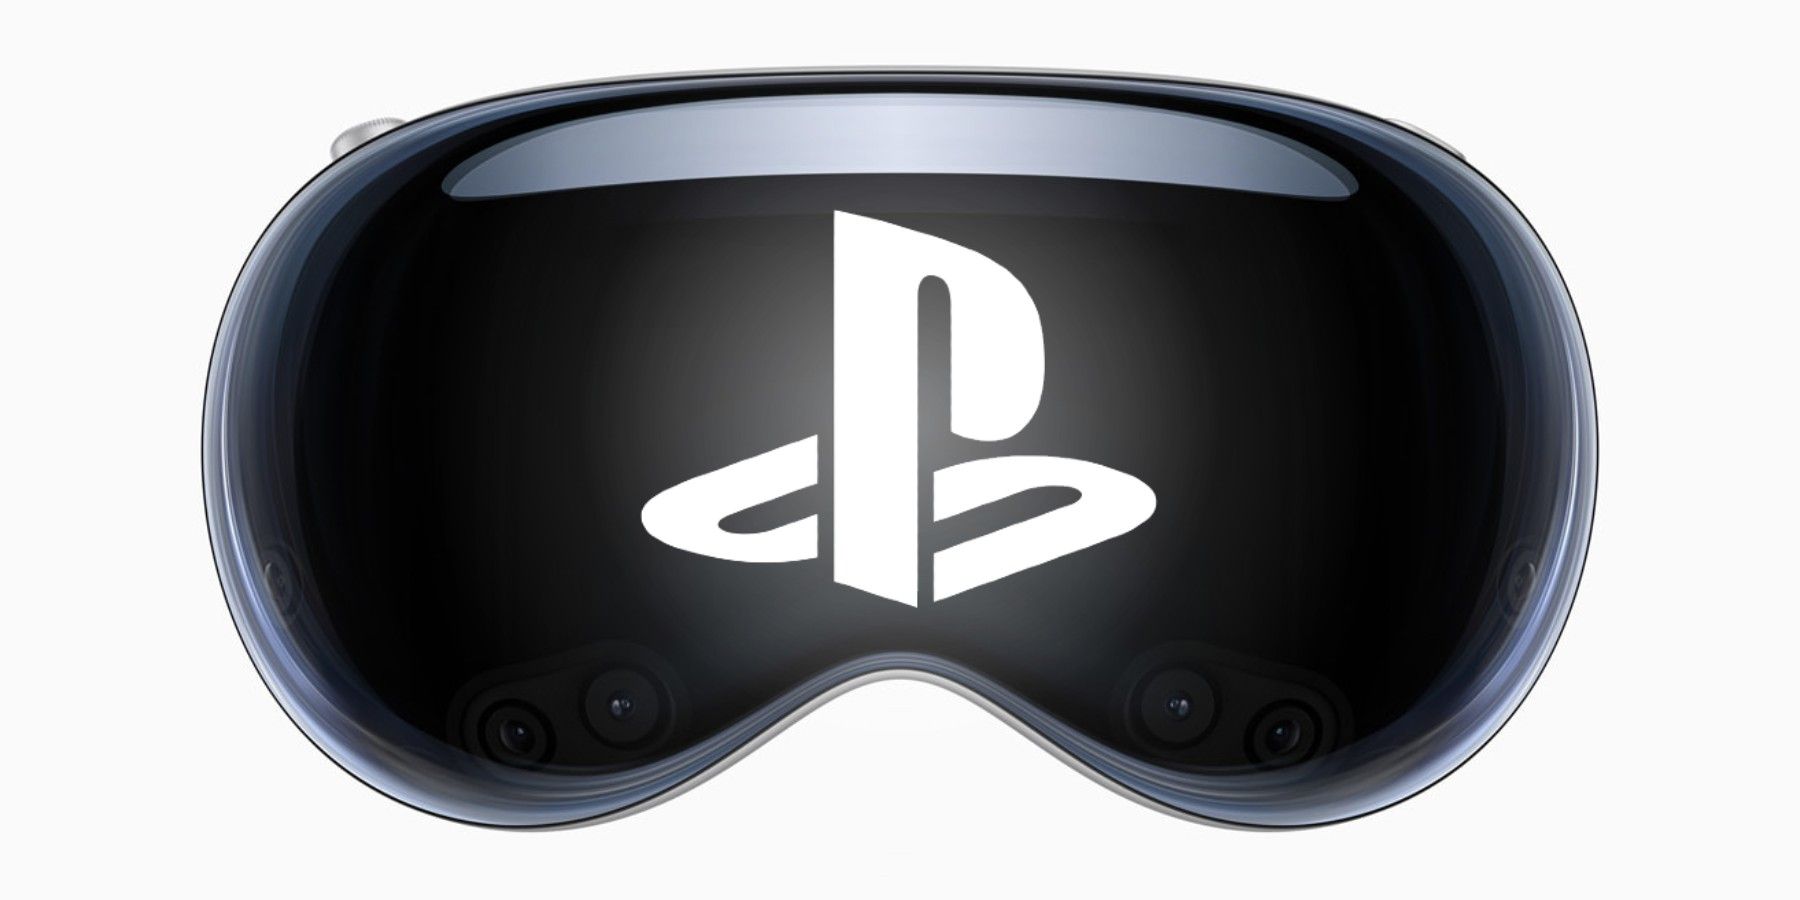 Sony đang chuẩn bị ra mắt sản phẩm đủ sức khuất phục Vision Pro trong tương lai?